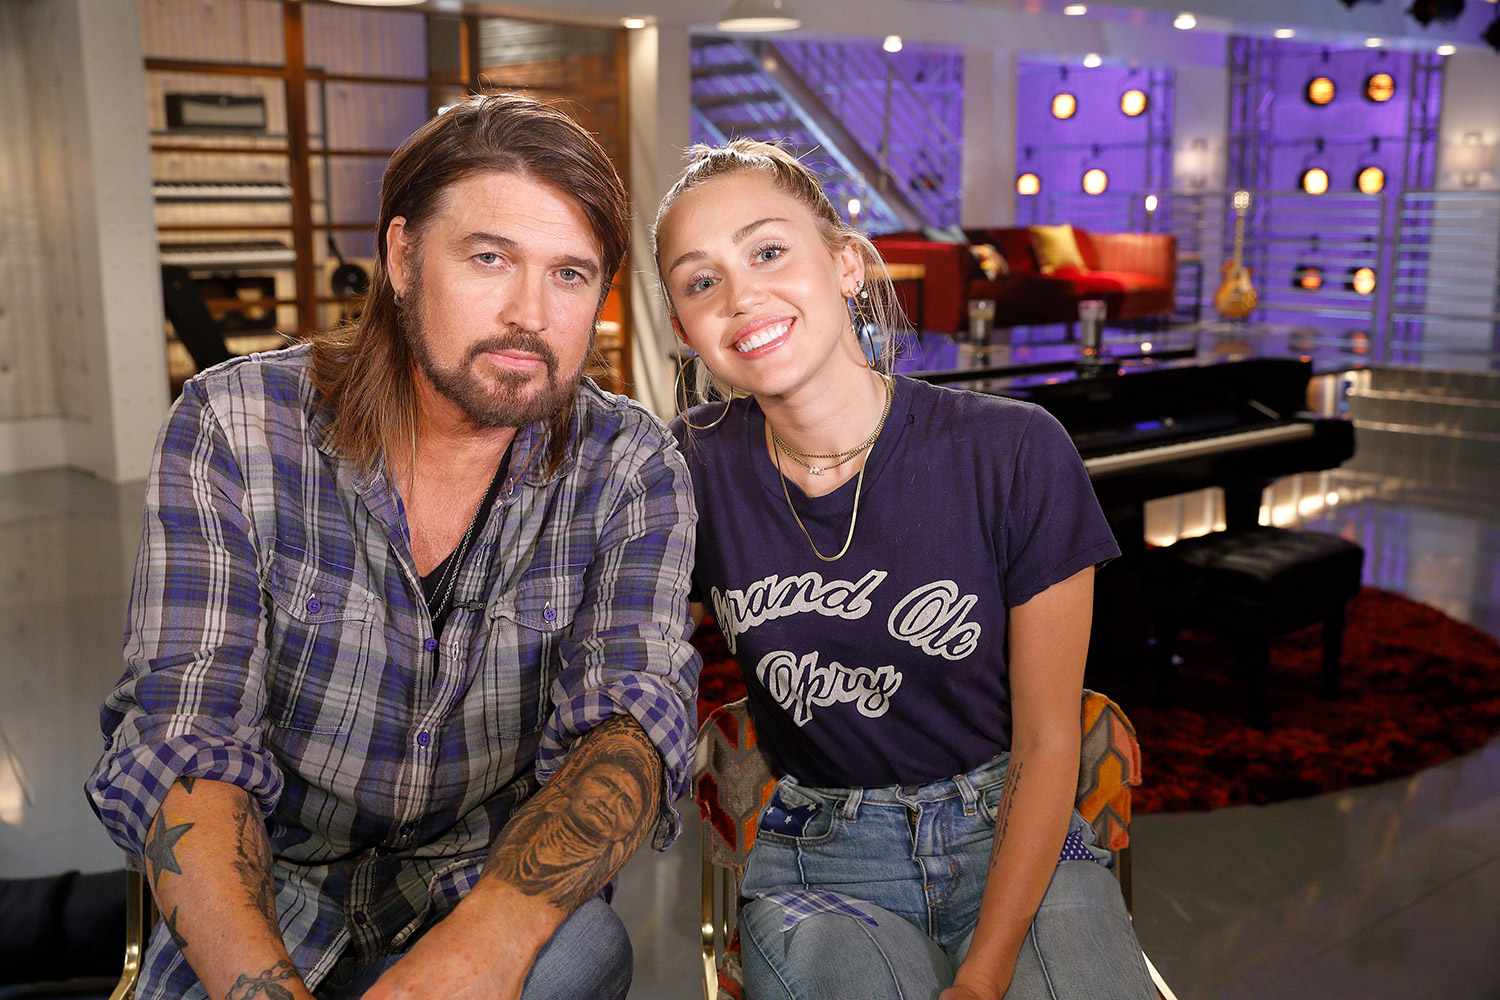 Këngëtarja Miley Cyrus i “heq vizën” të atit, shkak u bë një audio skandaloze